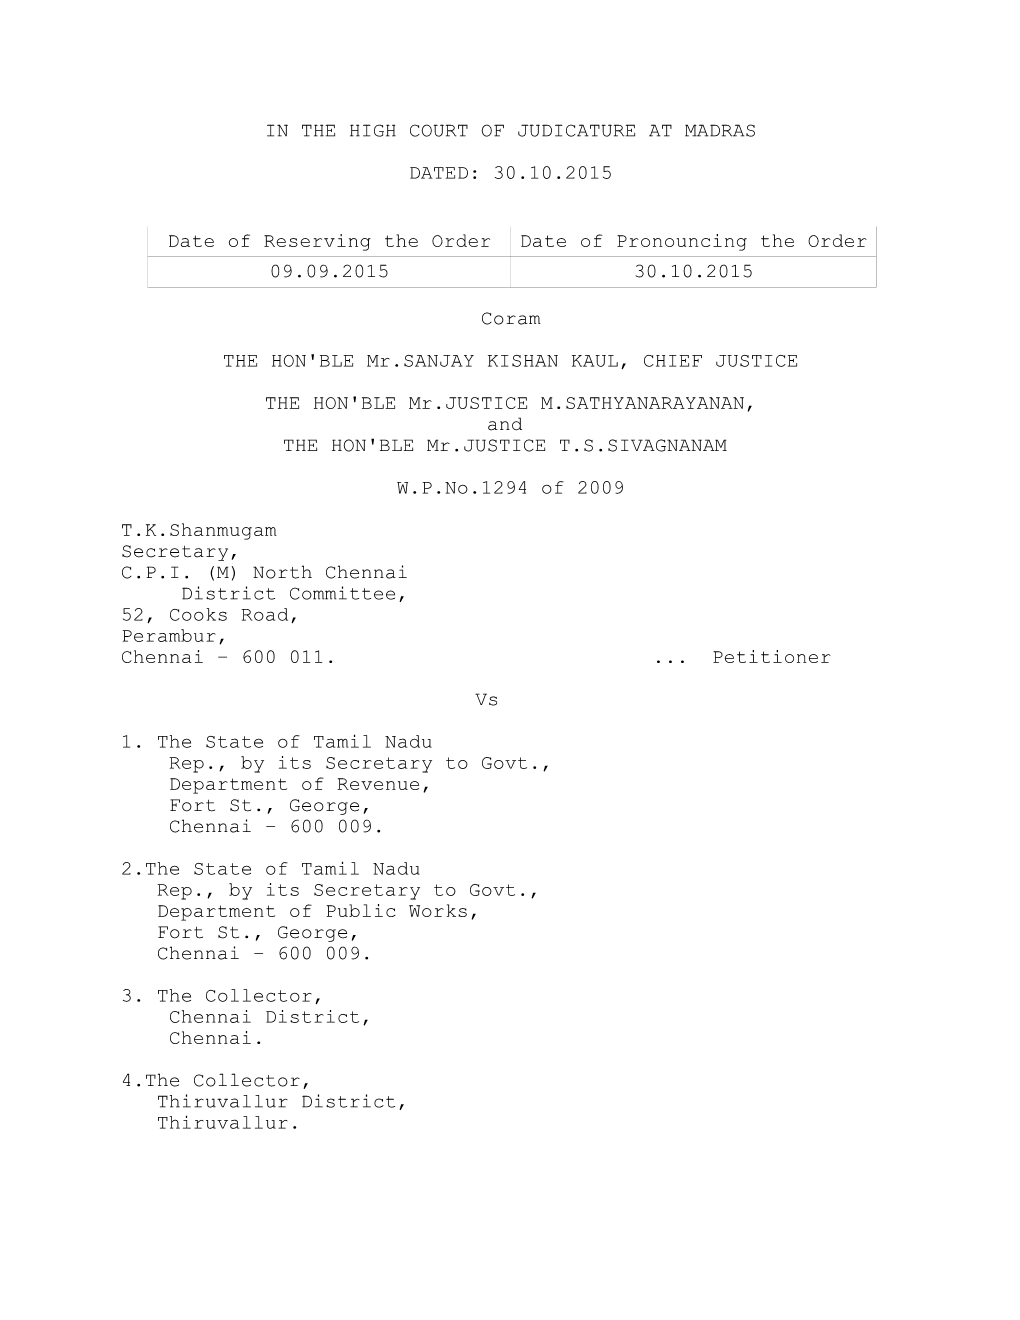 W.P. No. 1294 of 2009, Madras High Court